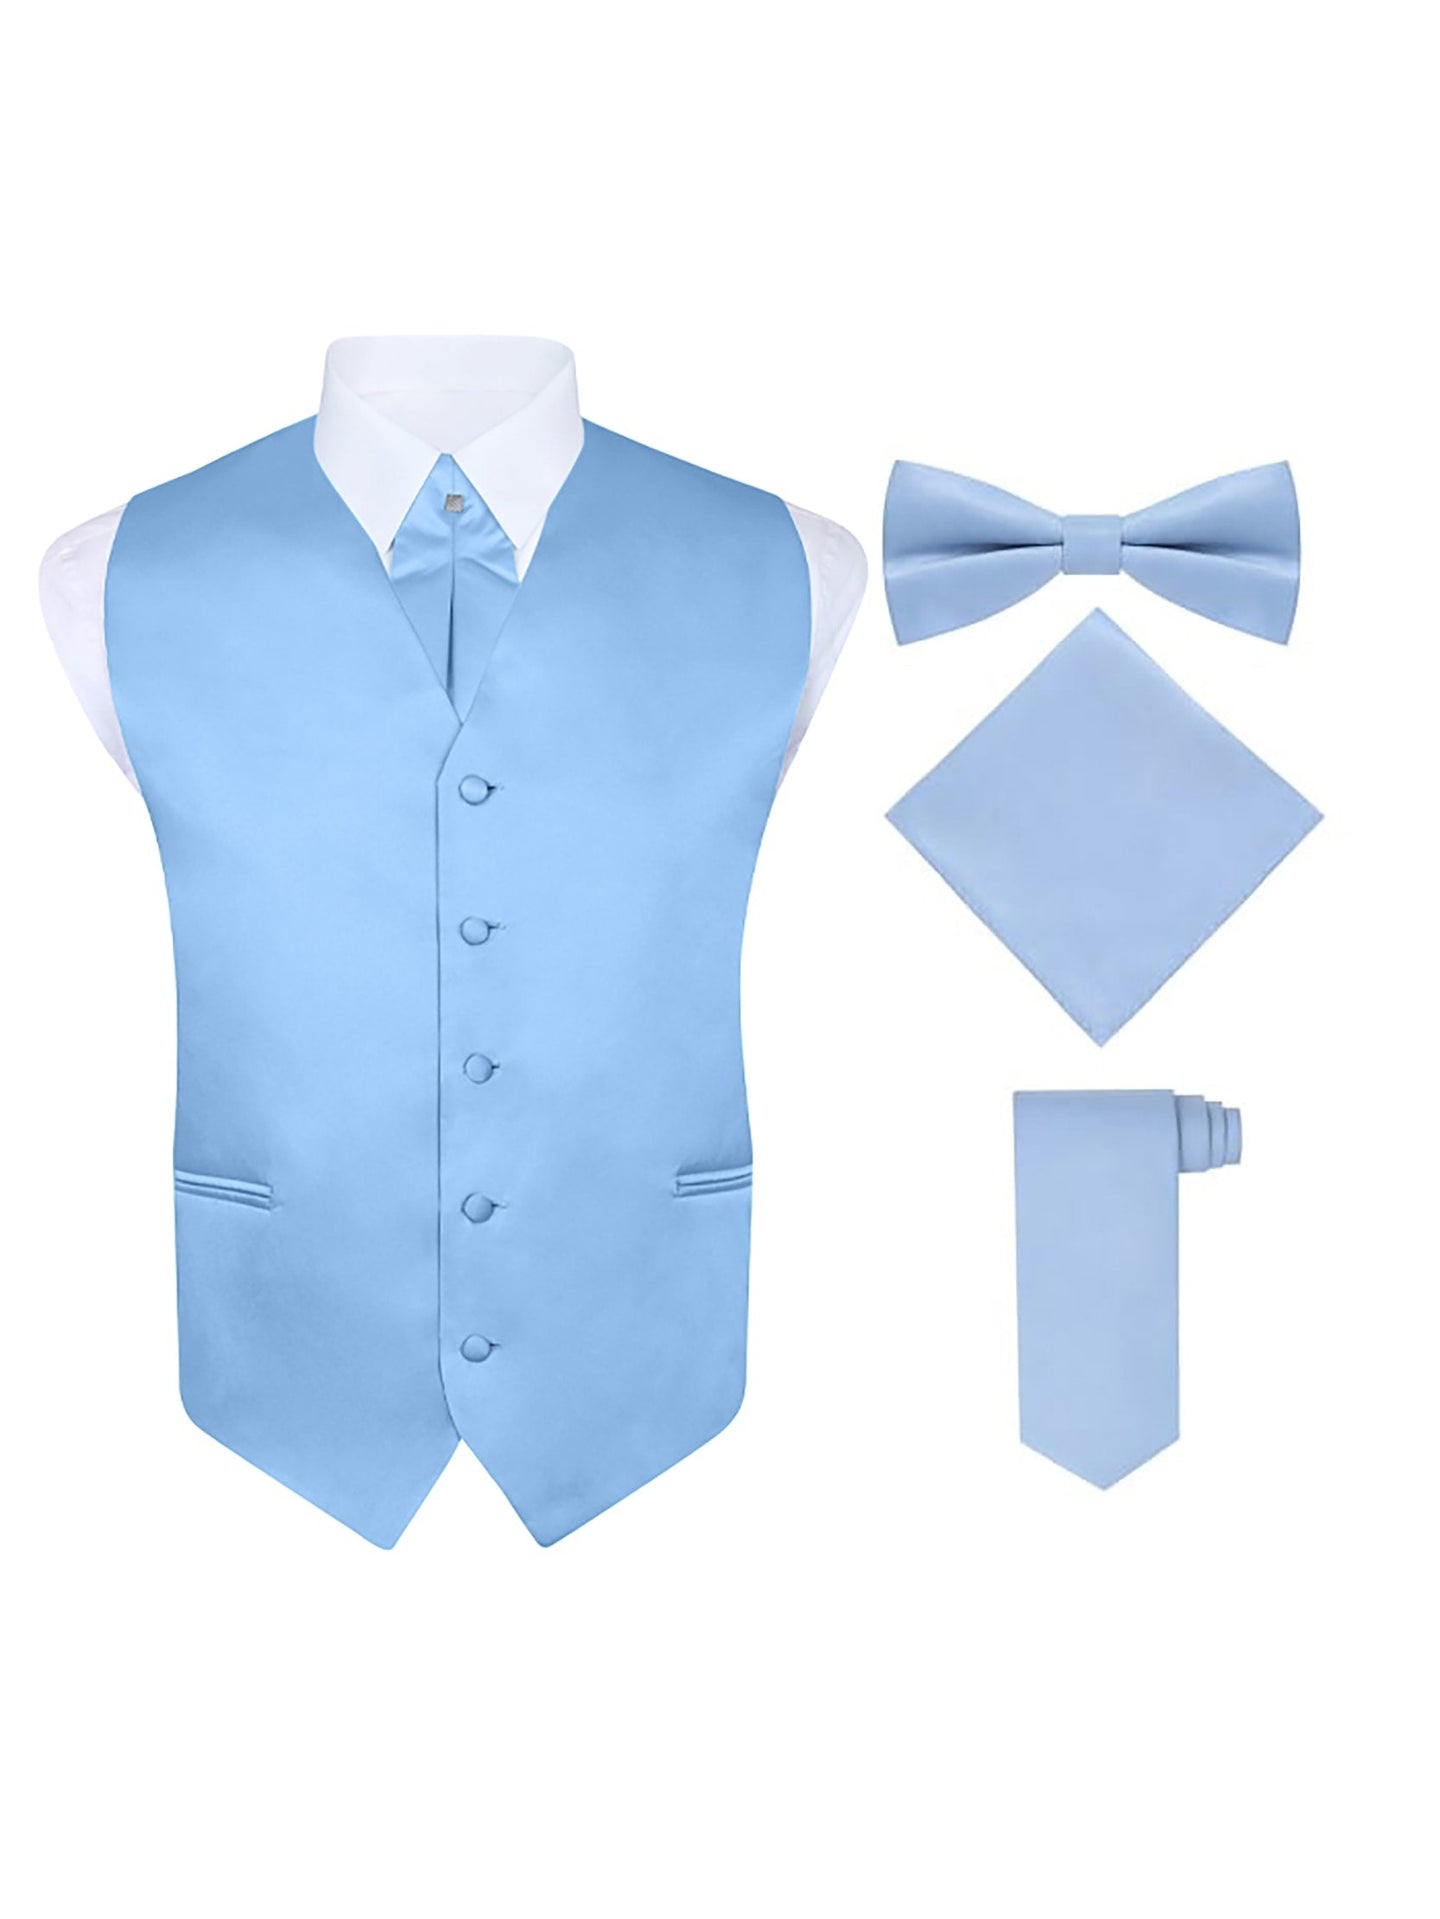 S.H. Churchill & Co. Men's 5 Piece Vest Set, with Cravat, Bow Tie, Neck Tie & Pocket Hanky-Light Blue